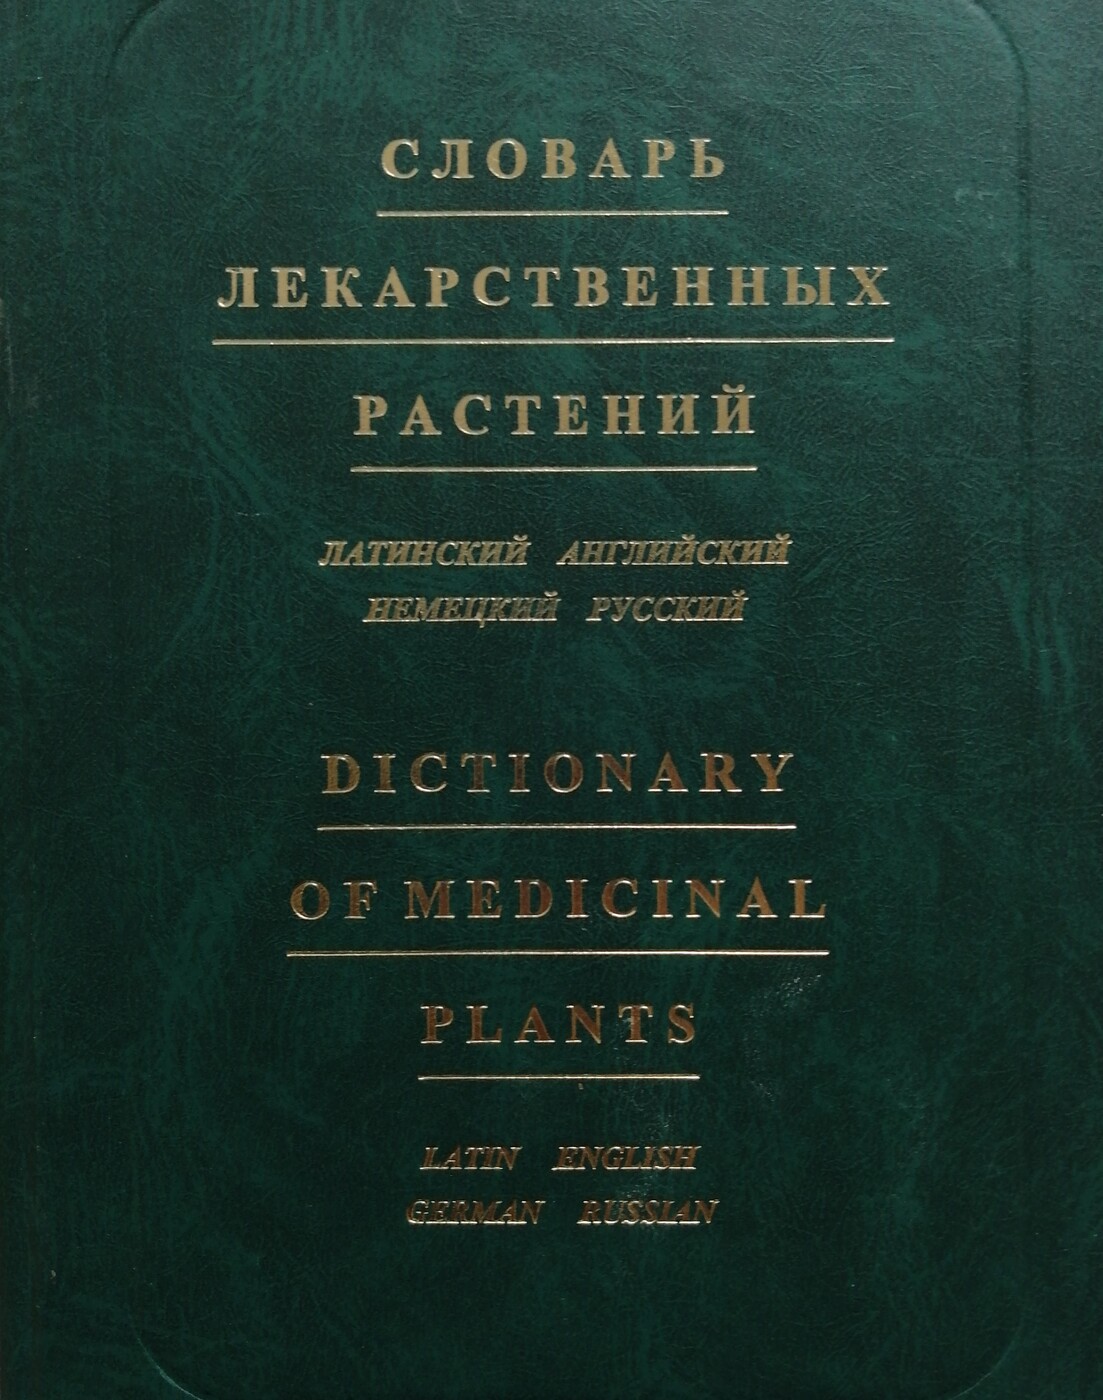 Словарь лекарственных растений (латинский, английский, немецкий, русский) / Dictionary of Medicinal Plants (Latin, English, German, Russian)